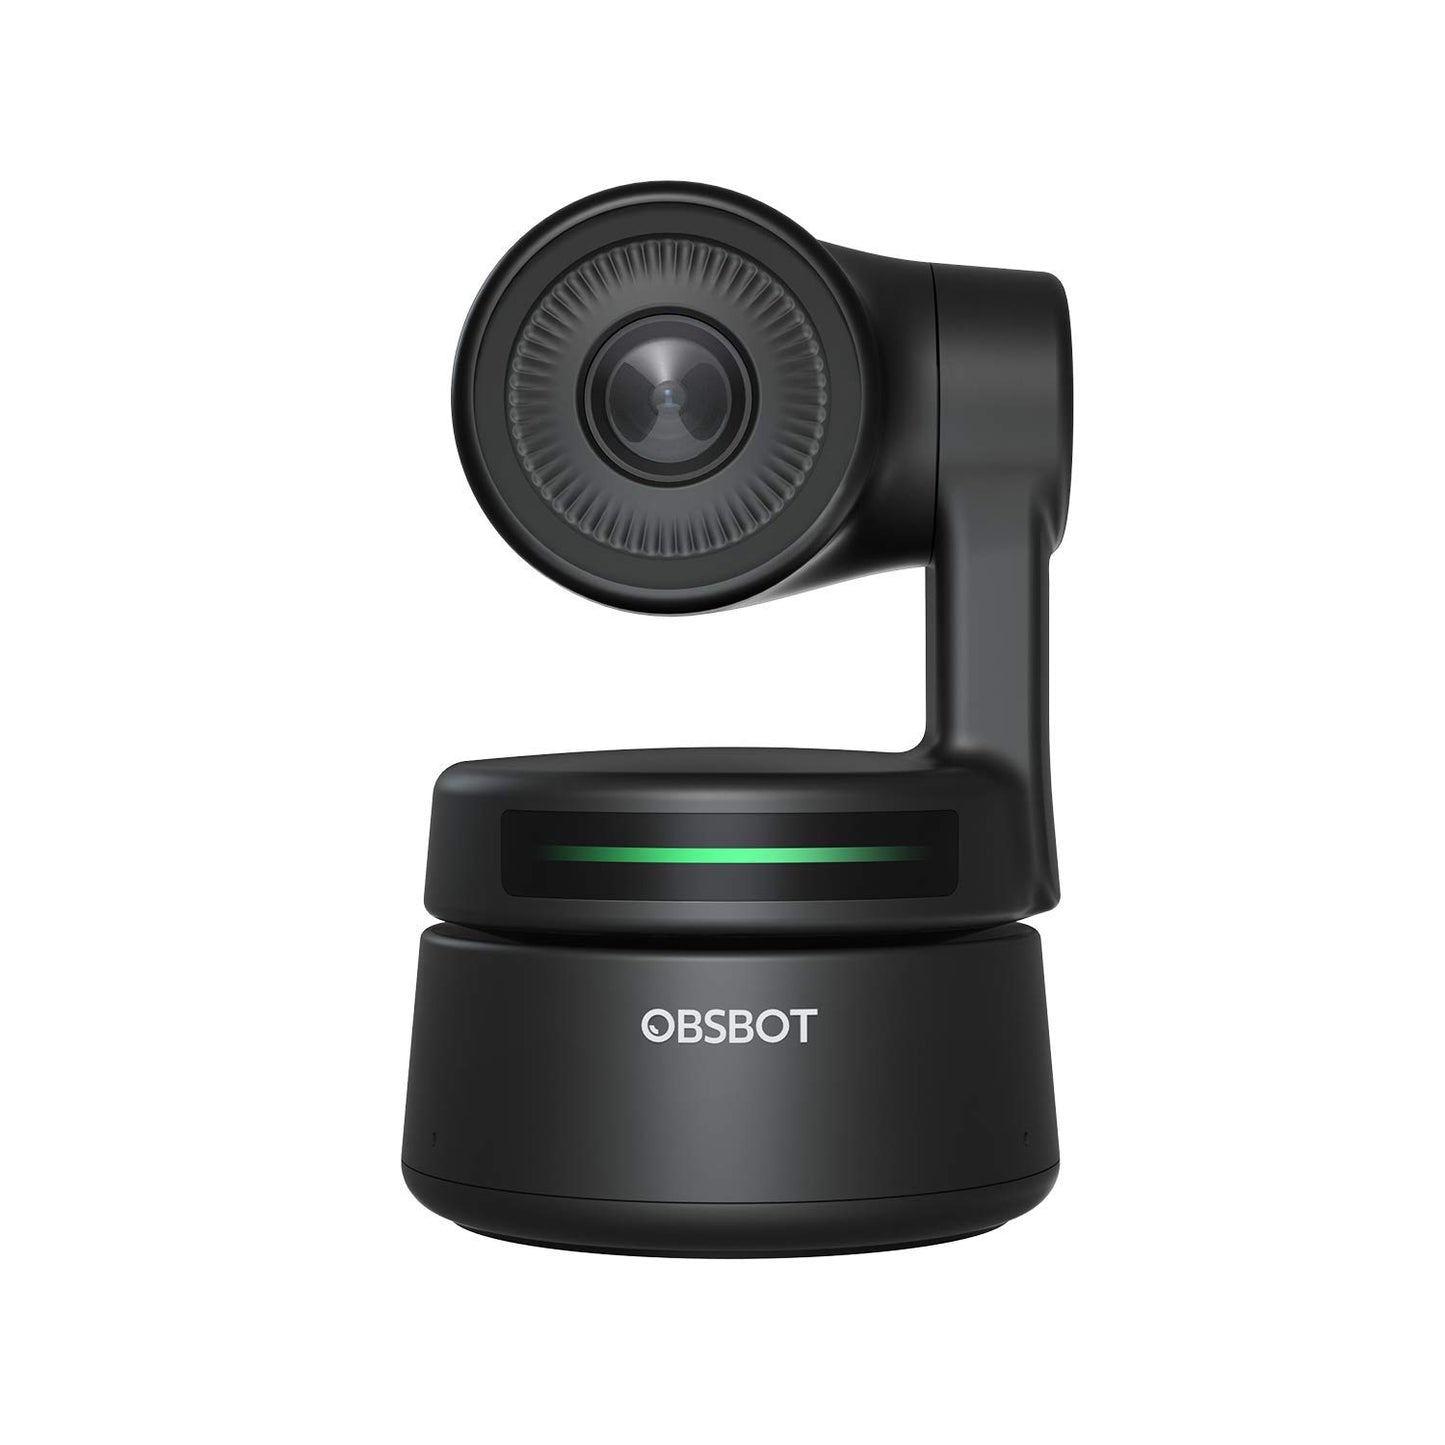 OBSBOT Tiny cámara web PTZ con tecnología AI, Full HD 1080p videoconferencia, grabación y transmisión